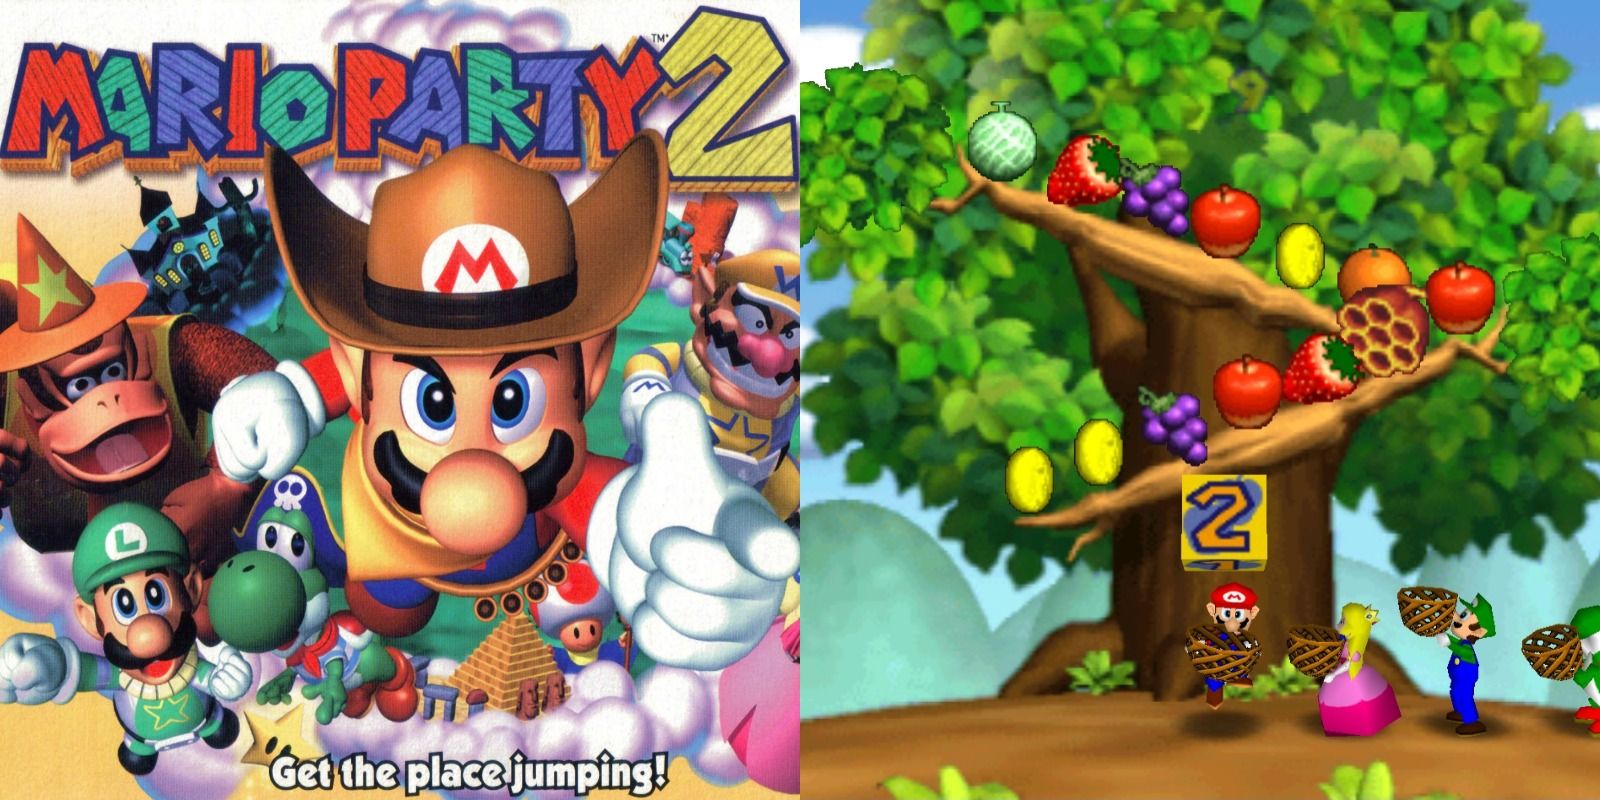 Mario Party 2 for the Nintendo 64